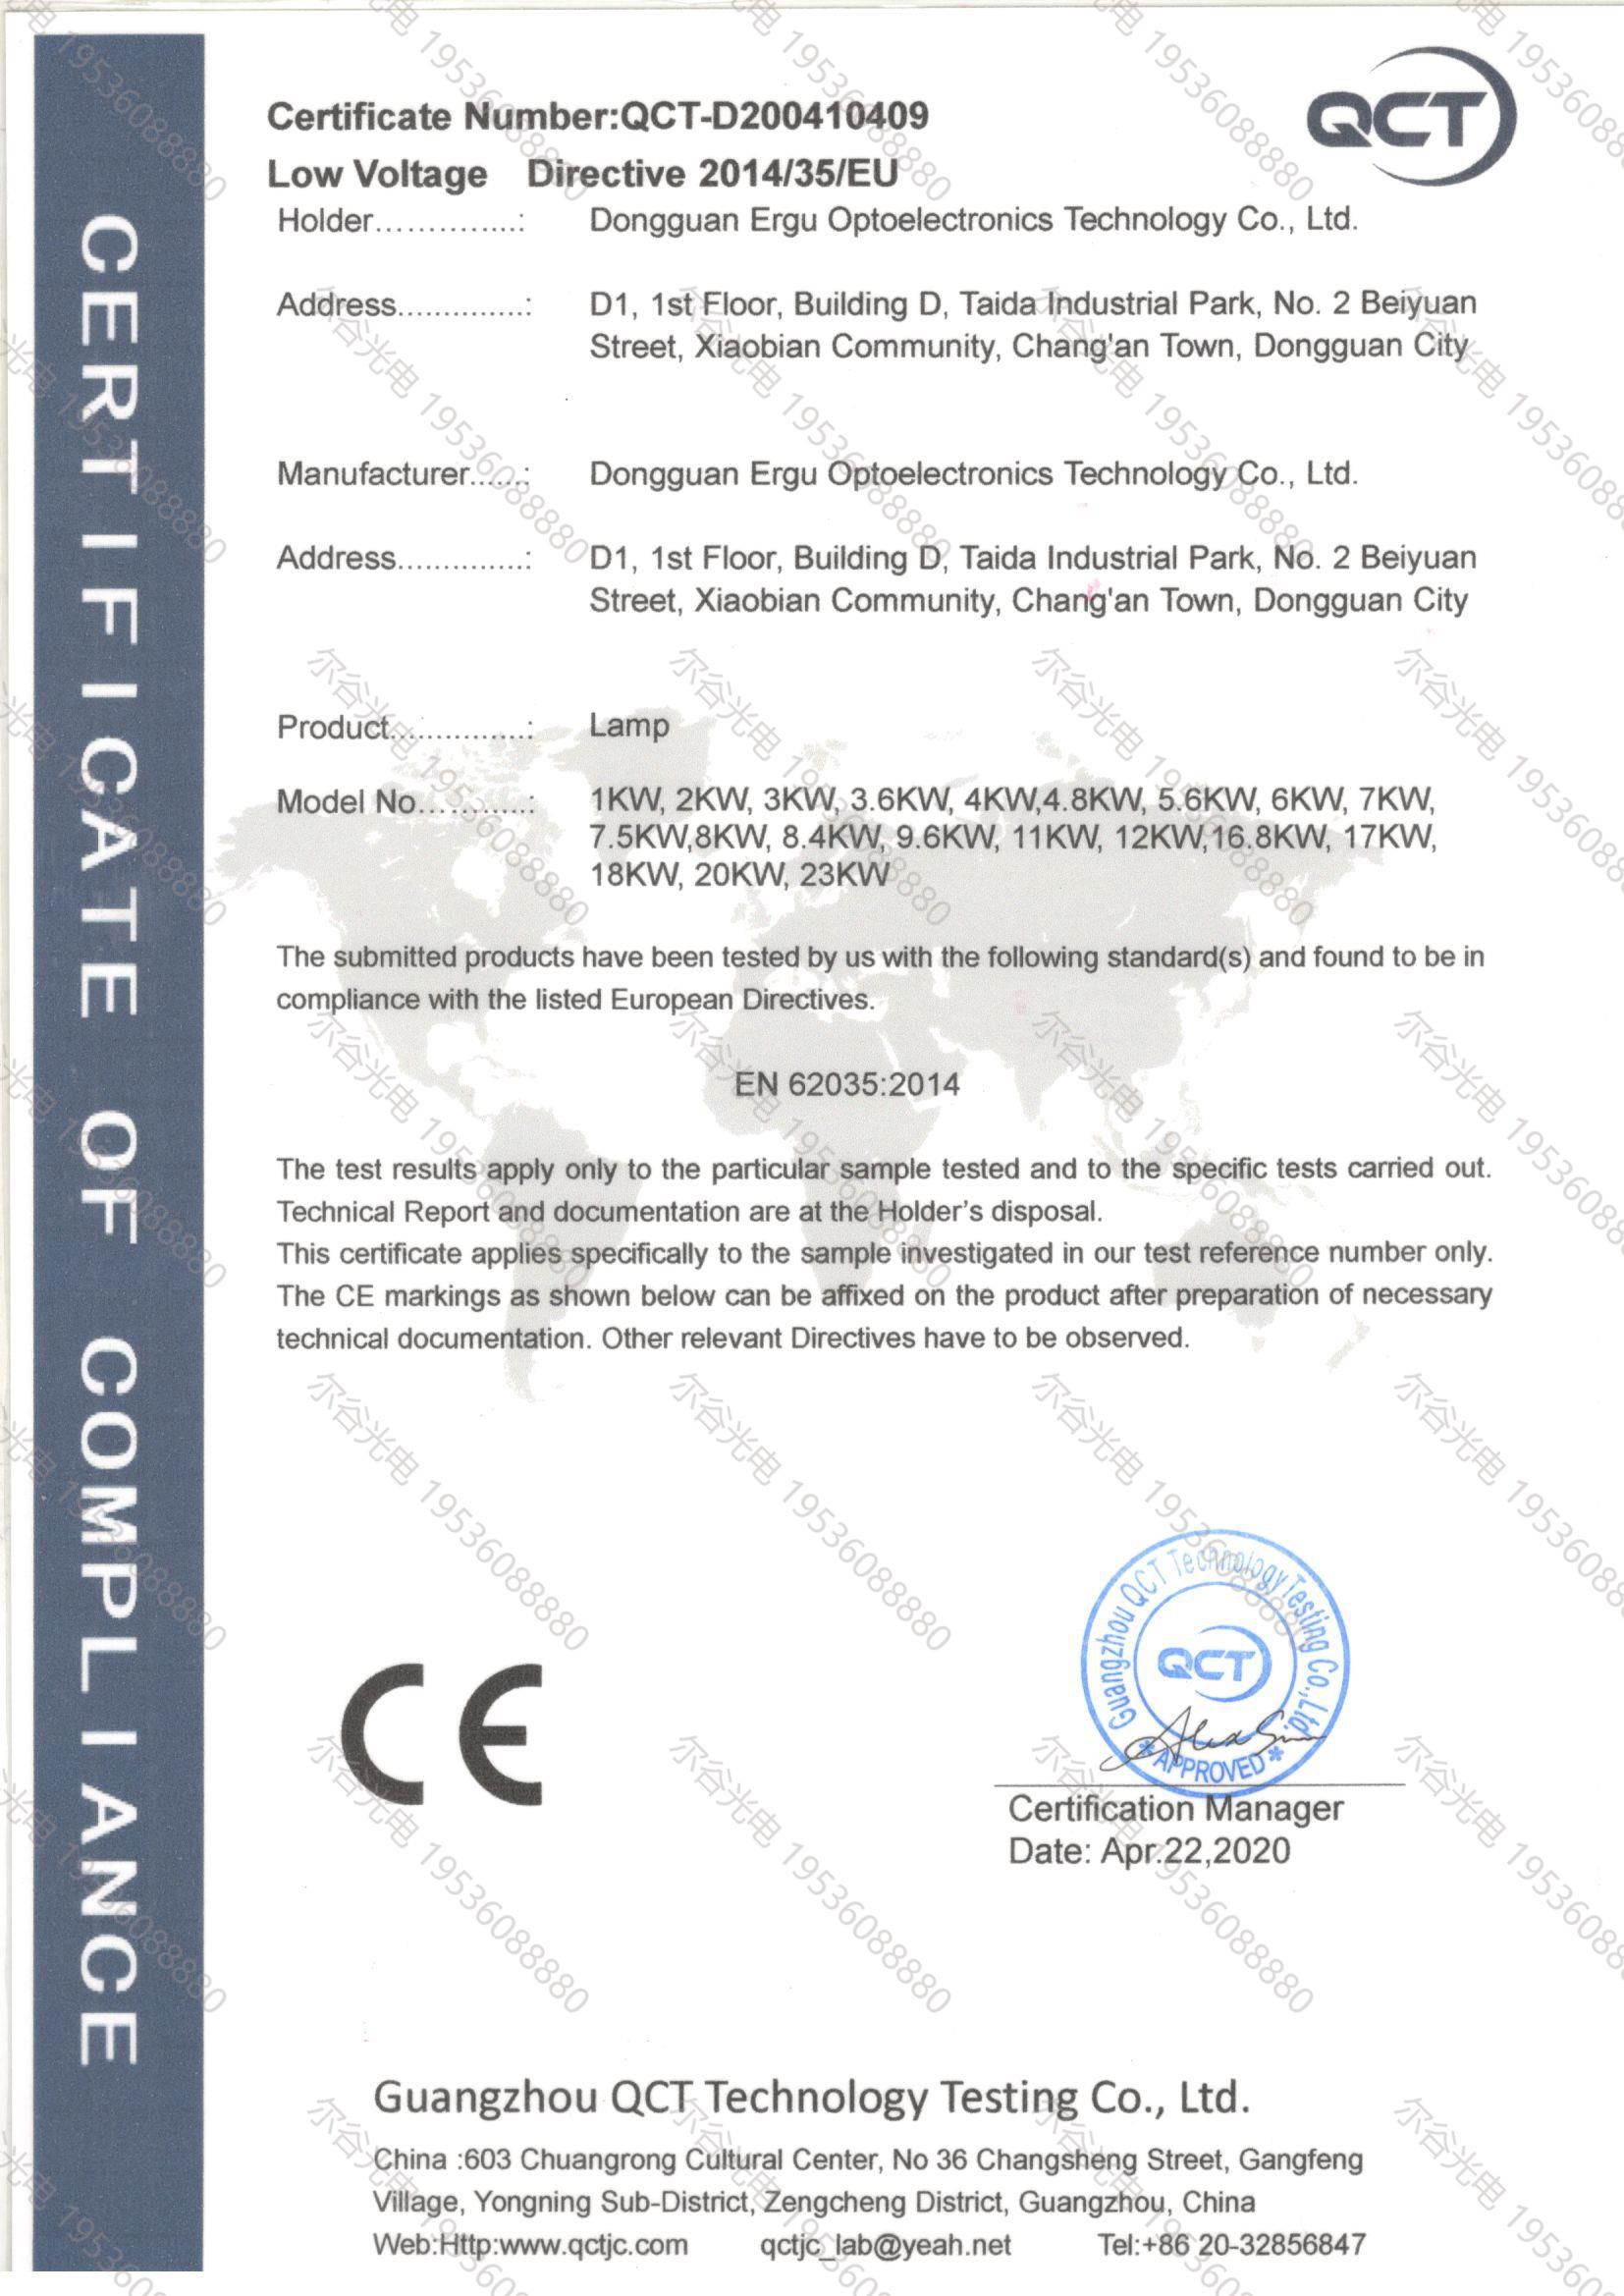 紫外线固化灯CE认证证书